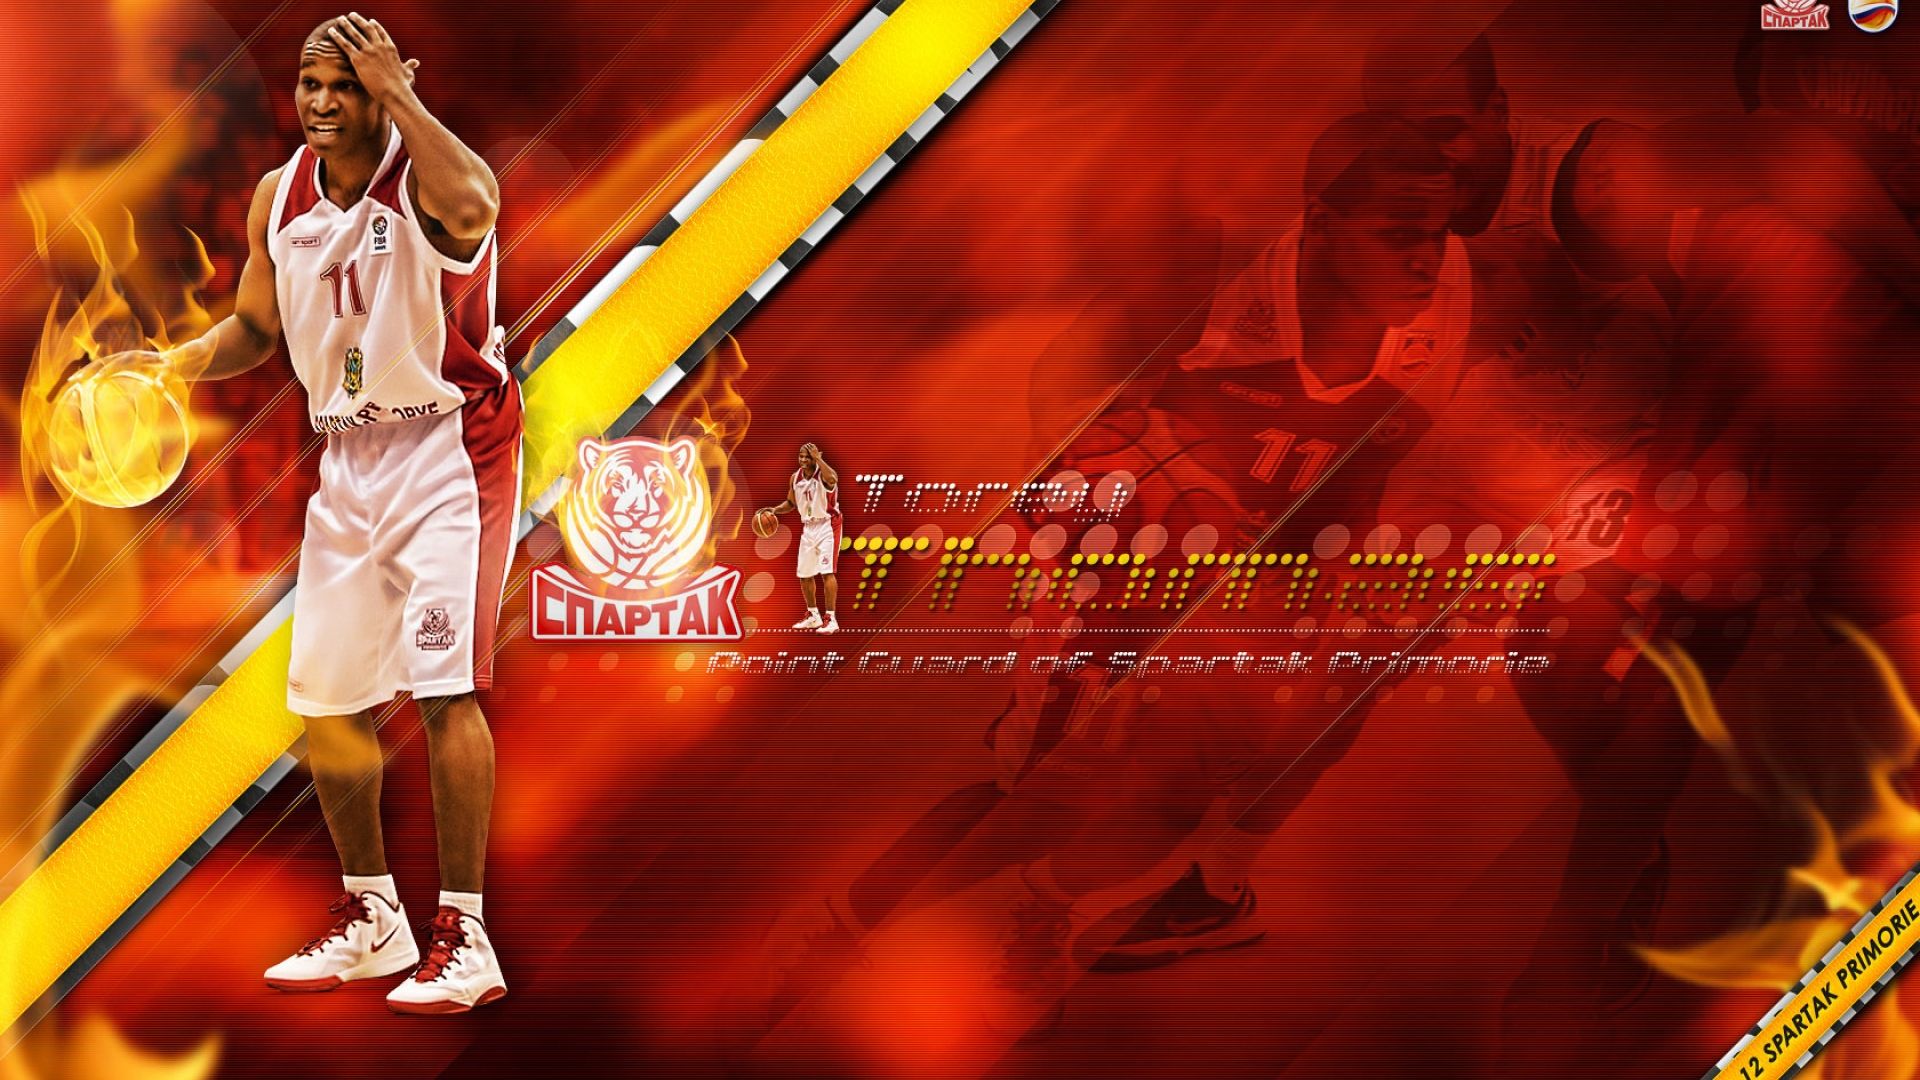 Torey Thomas Spartak Primorye NBA wallpaper - HD Wallpapers